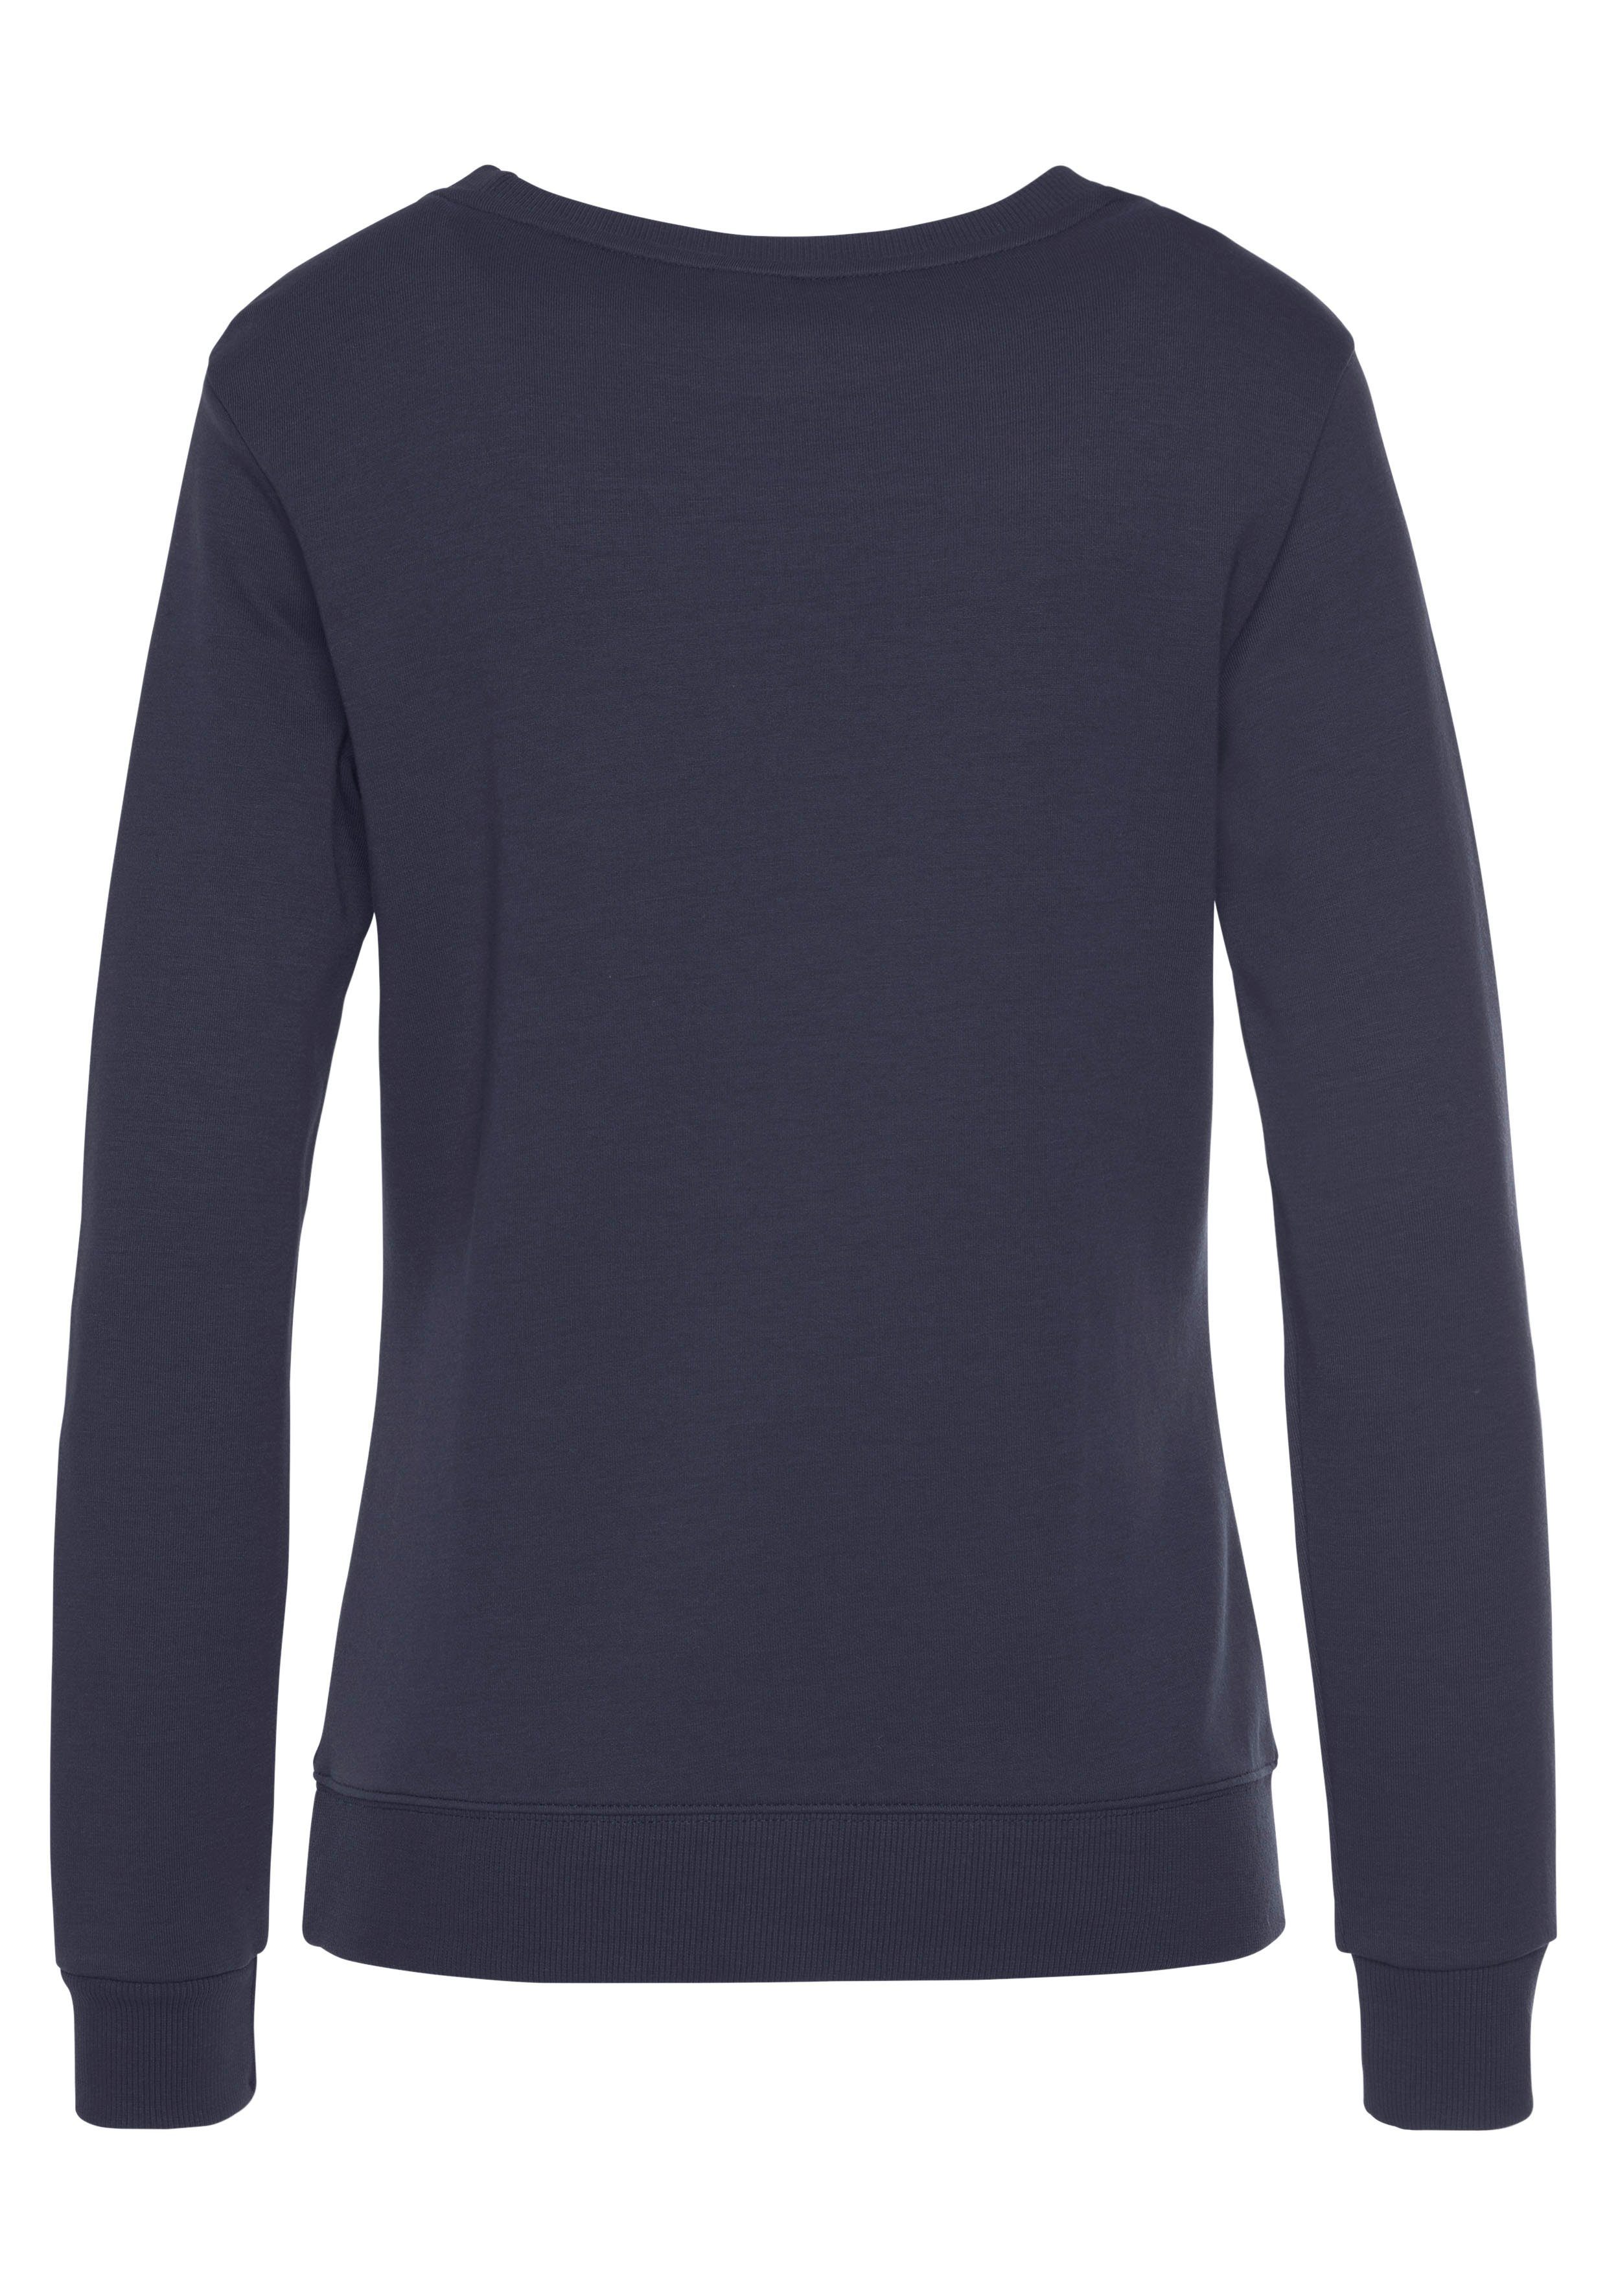 KangaROOS Sweatshirt mit Kontrastfarbenem Logodruck, marine Loungeanzug